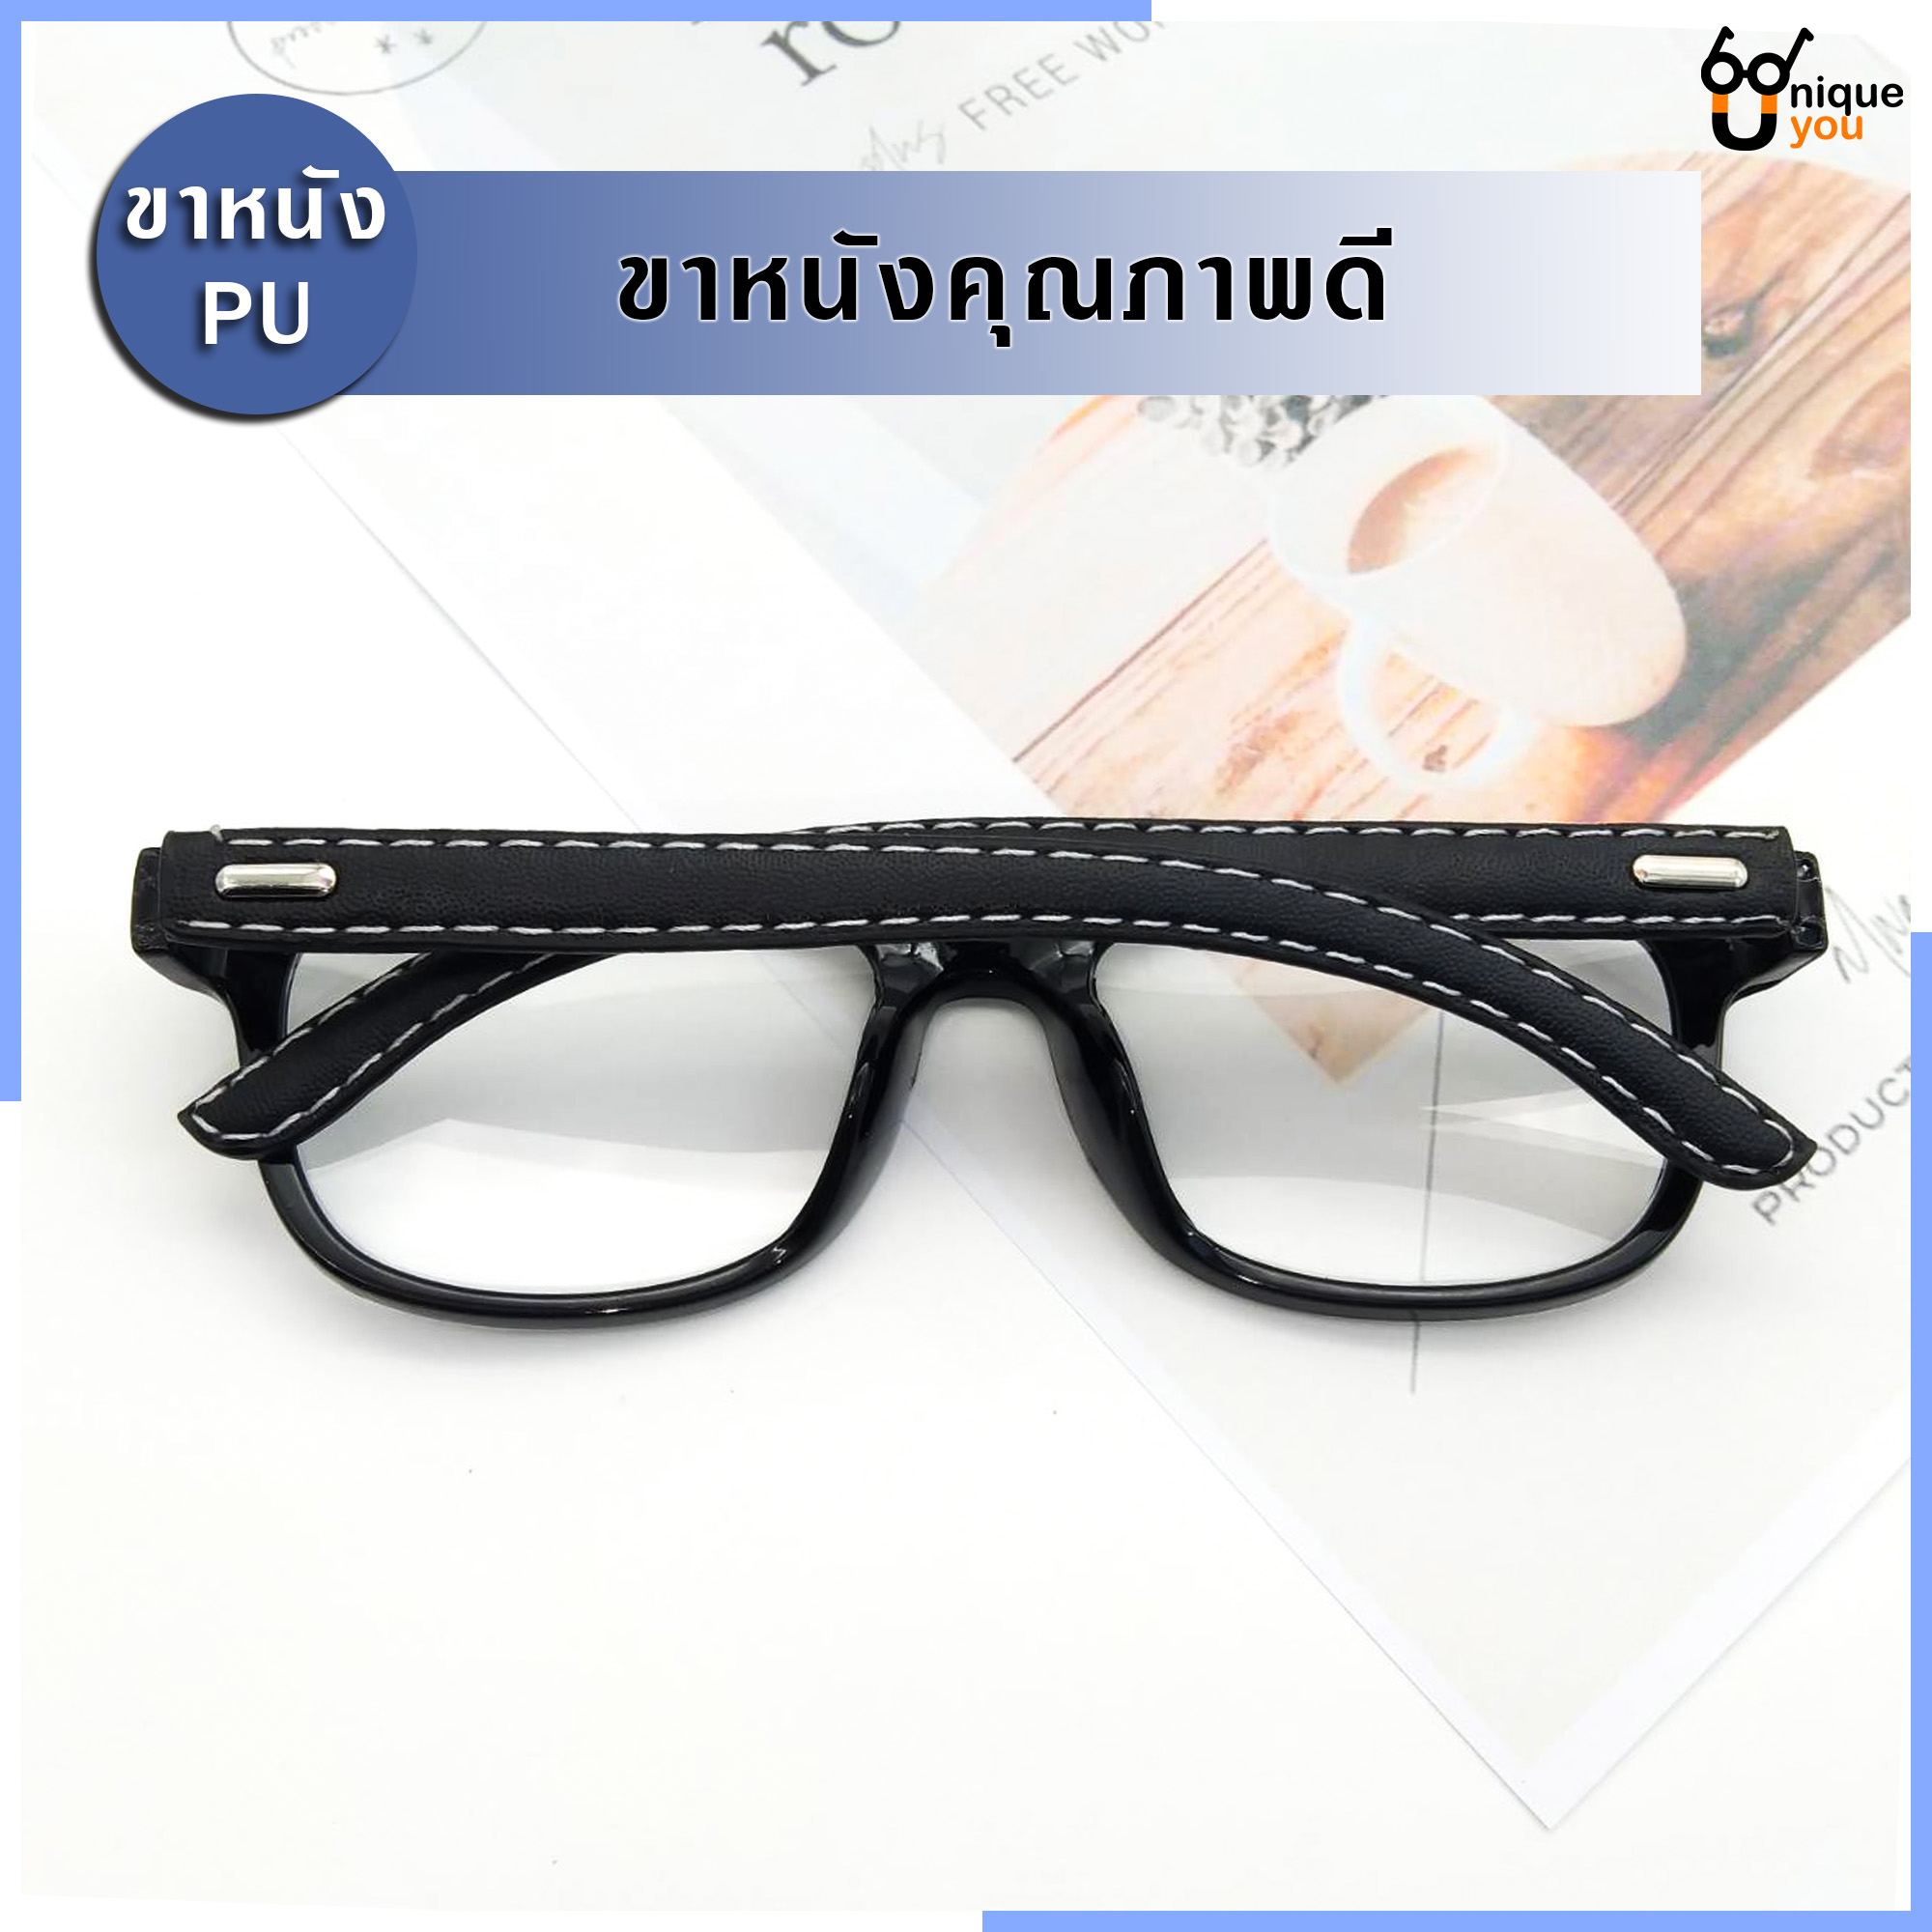 รูปภาพเพิ่มเติมของ Uniq แว่นสายตายาว แว่นสายตาสั้น ขาหนังPU กรอบแว่นหนังPU แว่นสายตา+กรอบแว่นตา แว่นสายตายาว-สั้น